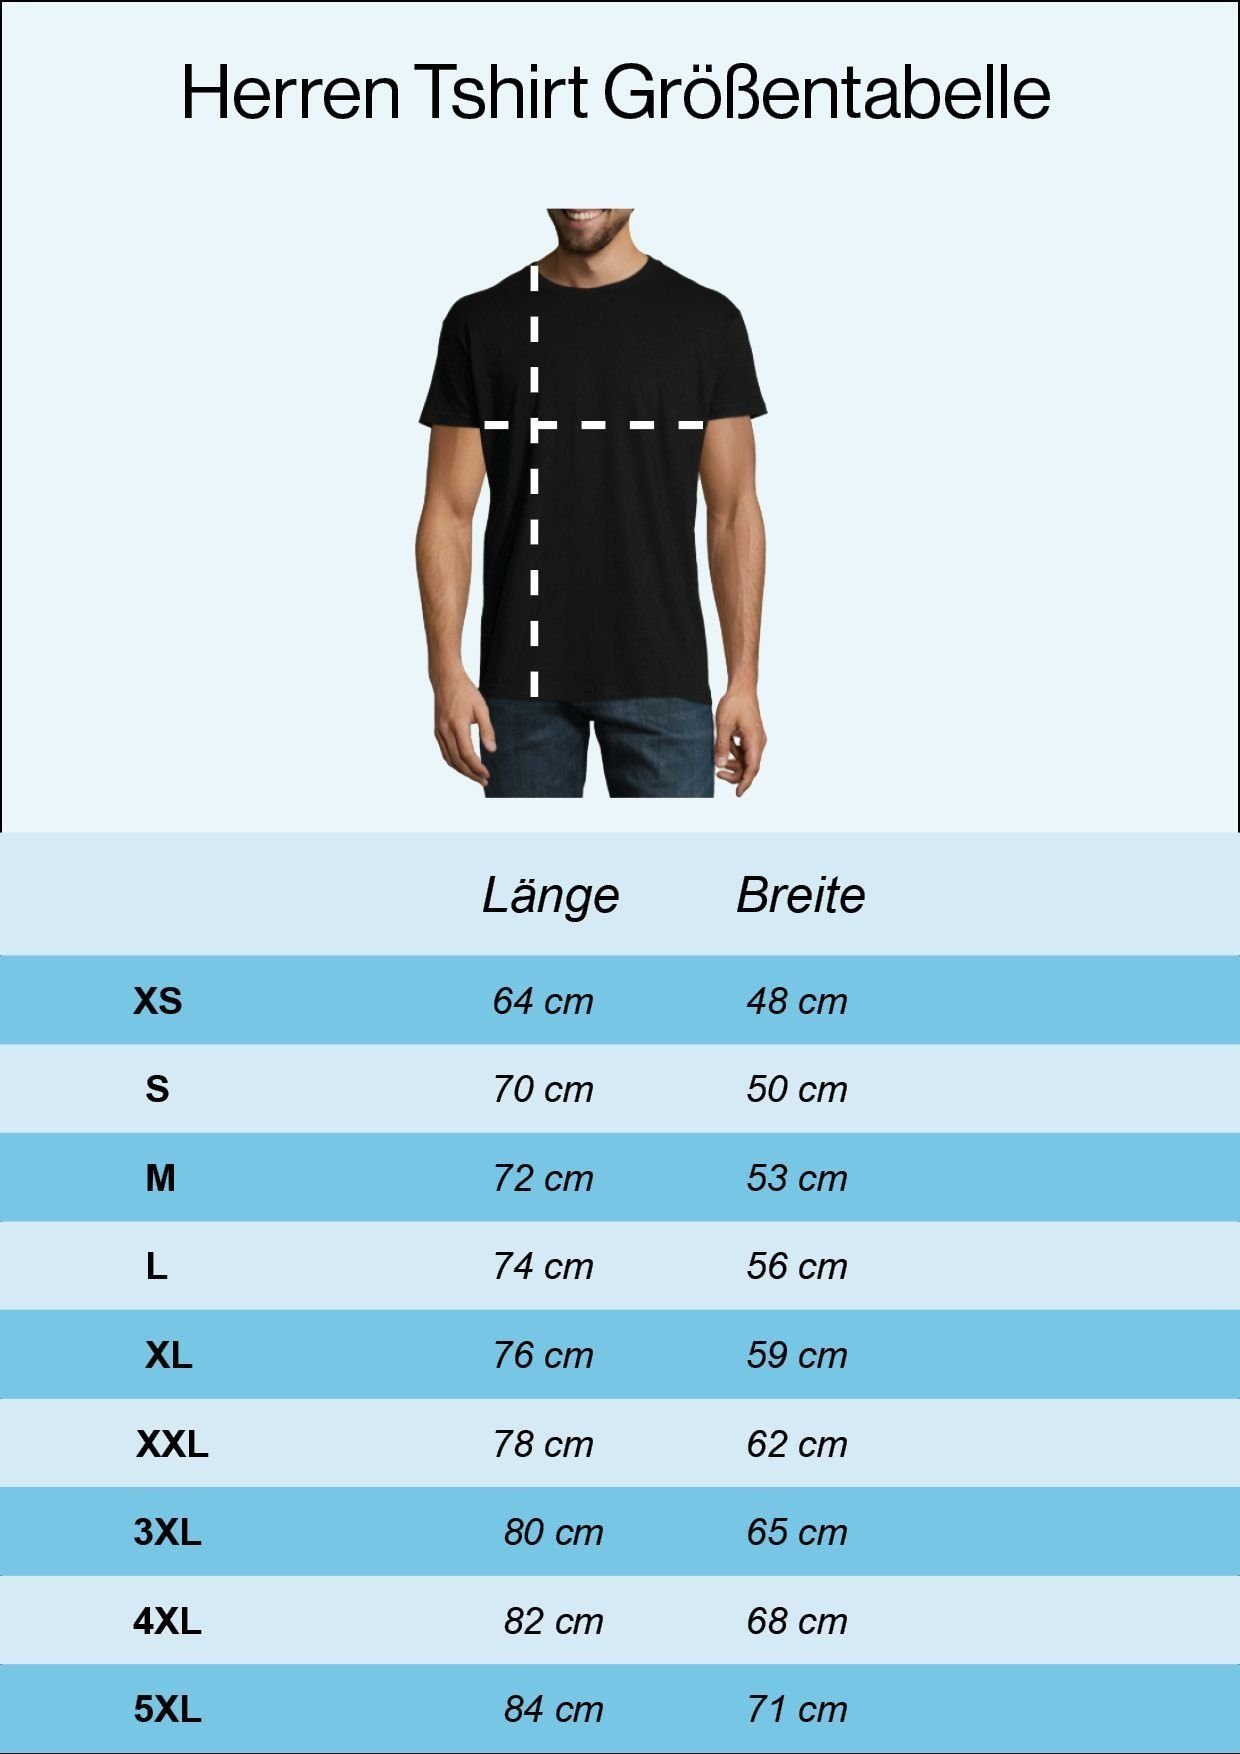 Ihn T-Shirt Print-Shirt lustigem Ring zu Navyblau mit Herren Ein Designz Youth Knechten Spruch